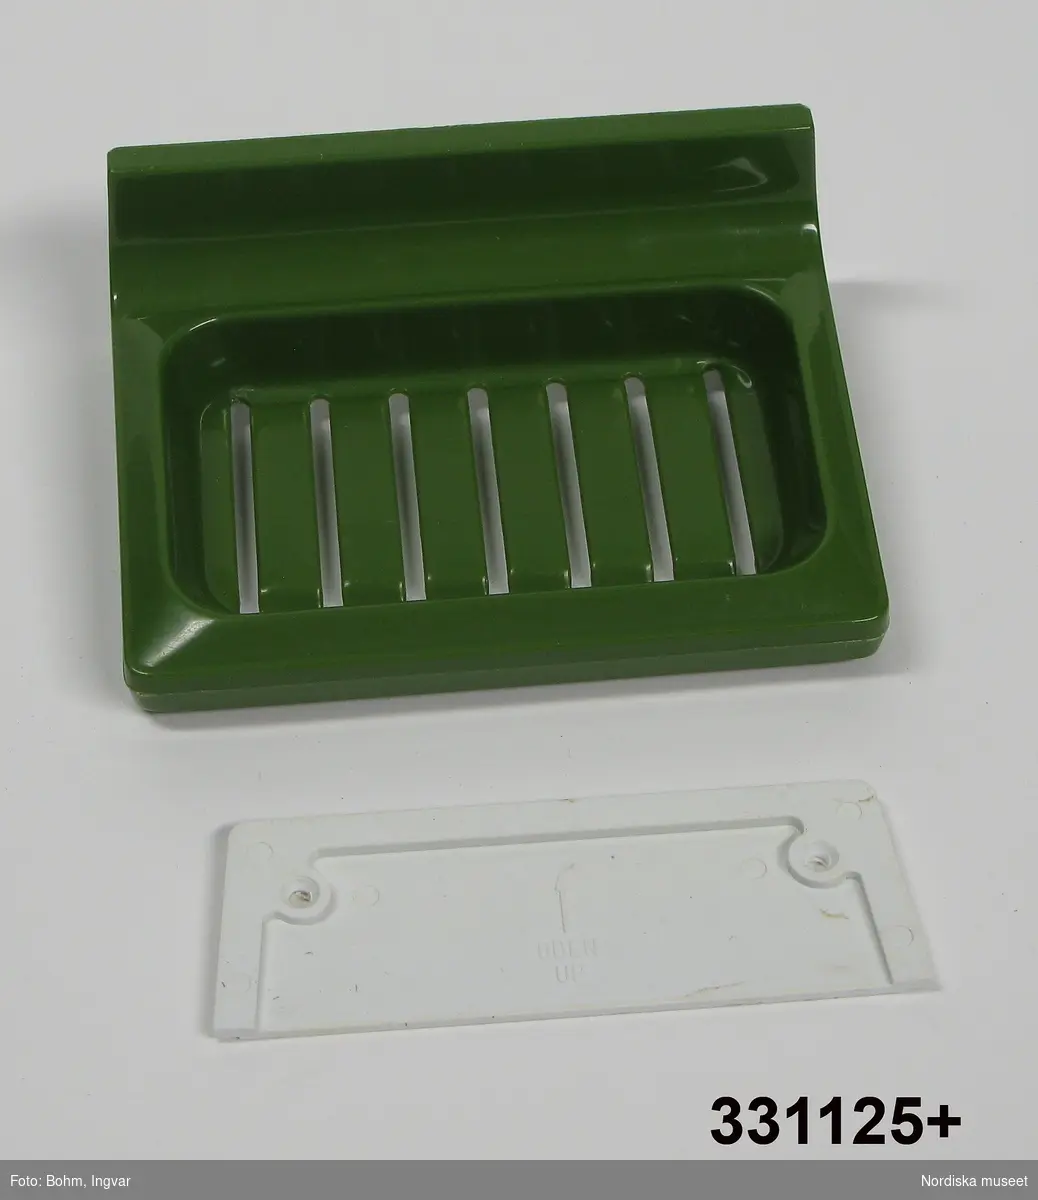 Tvålhållare, av grön (avocadogrön) formgjuten plast.  Löst vitt bakstycke/monteringsplatta med text "OBEN" och en pil. 
/Johan Åkerlund 2010